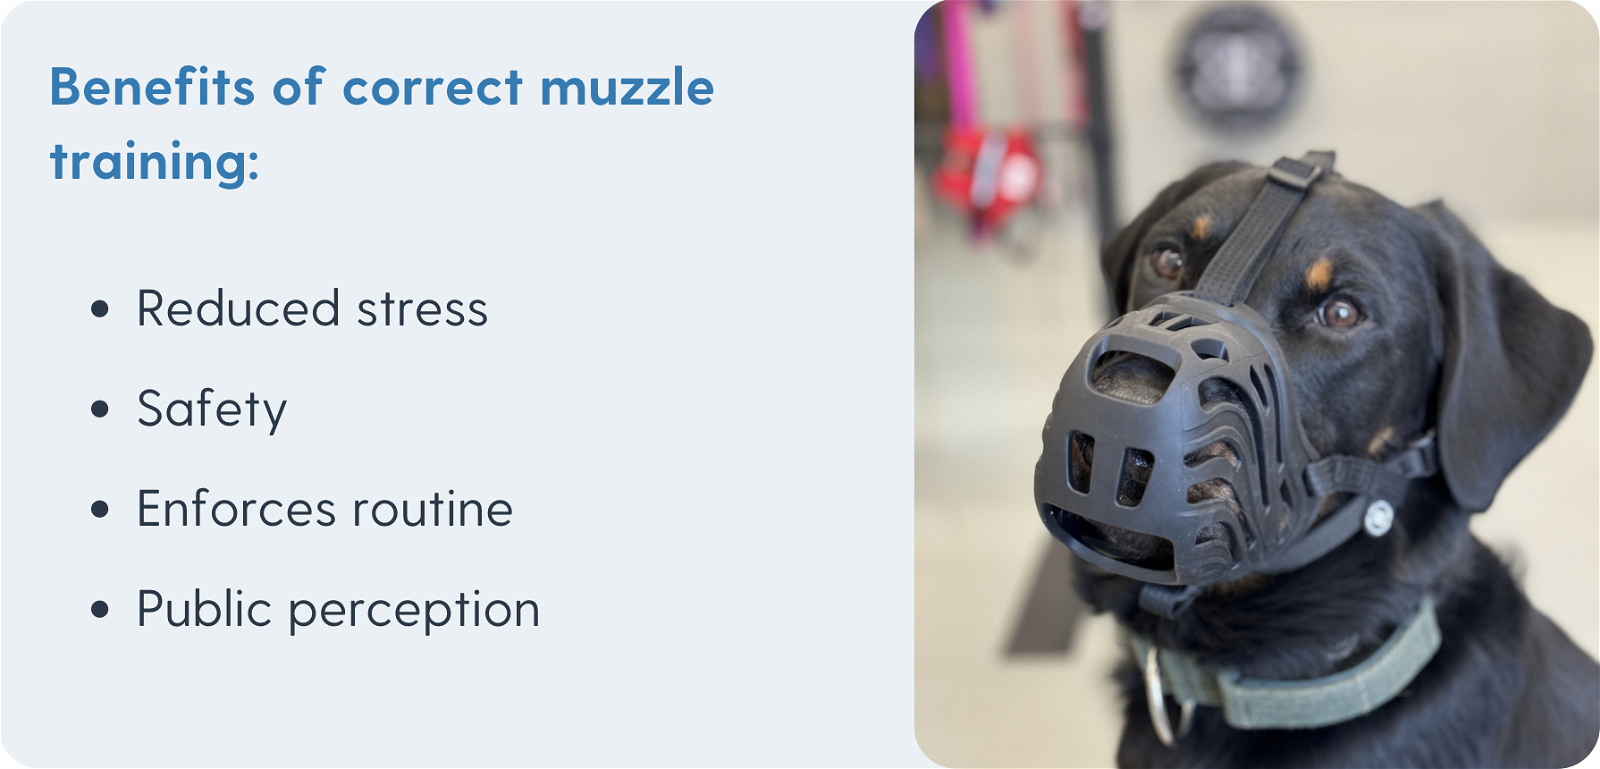 Benefits of correct muzzle training